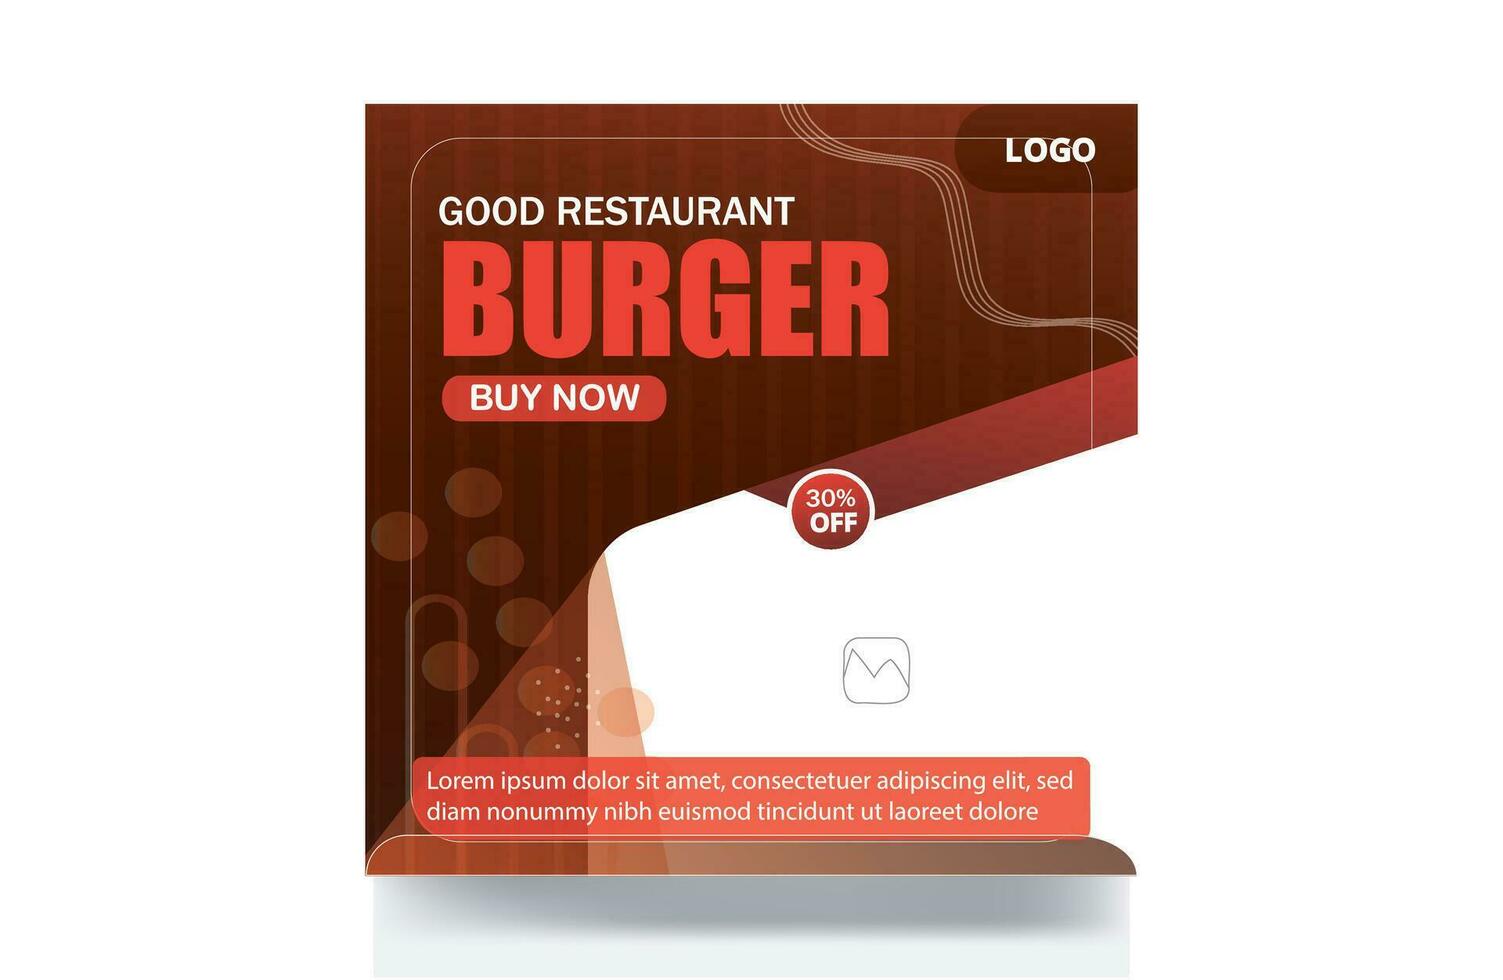 köstlich Essen Speisekarte Burger Restaurant Banner Sozial Medien Post vektor